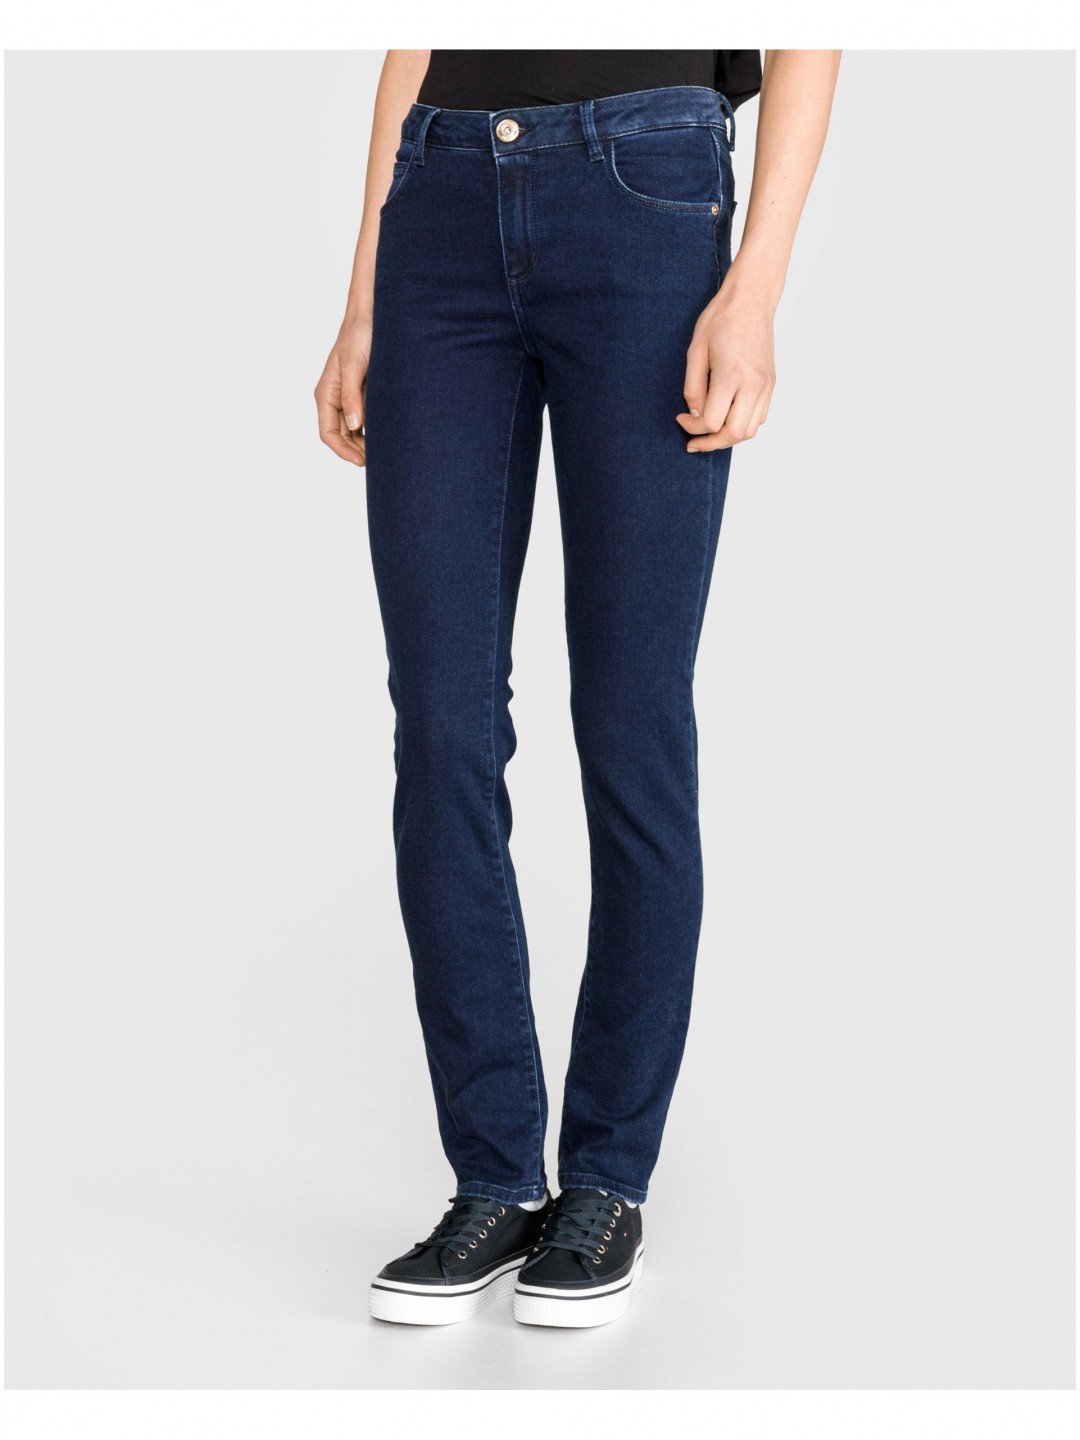 Modré dámské straight fit džíny Trussardi Jeans